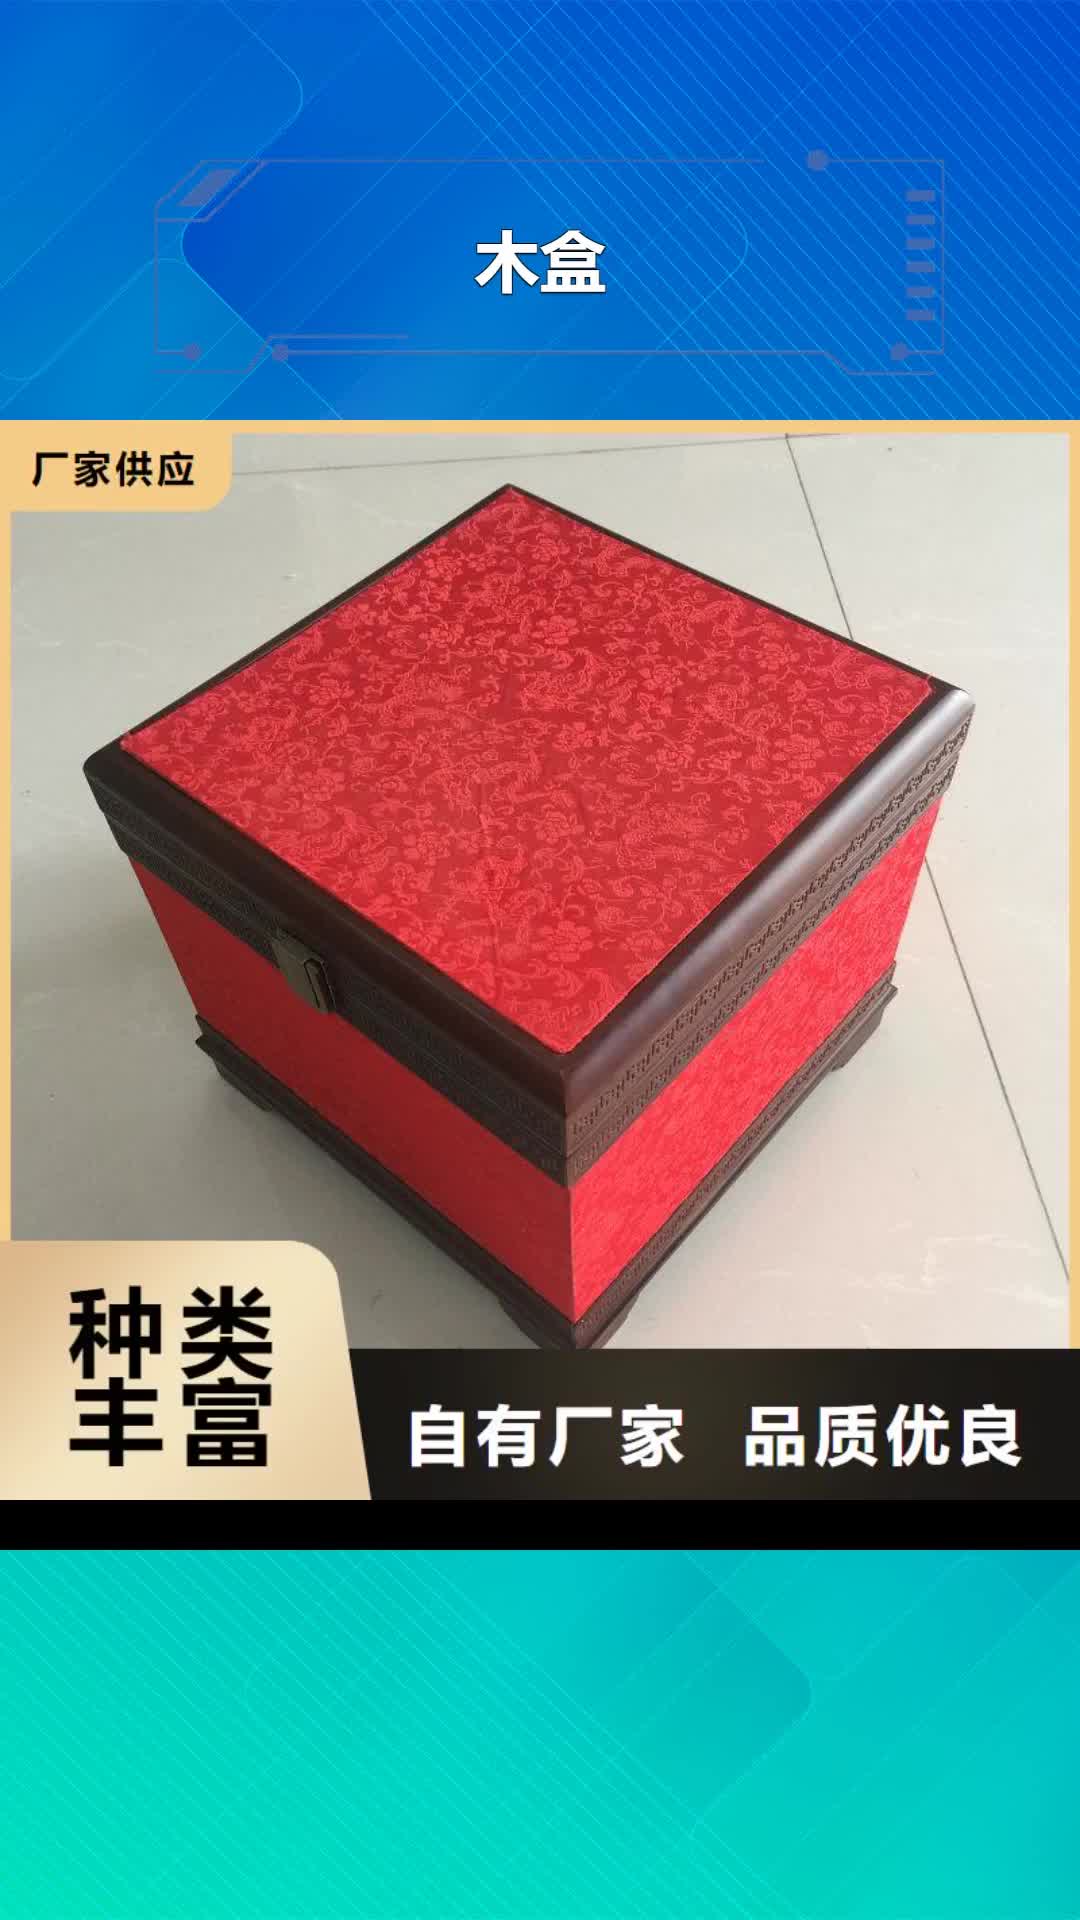 【西藏 木盒,防伪定制买的是放心】